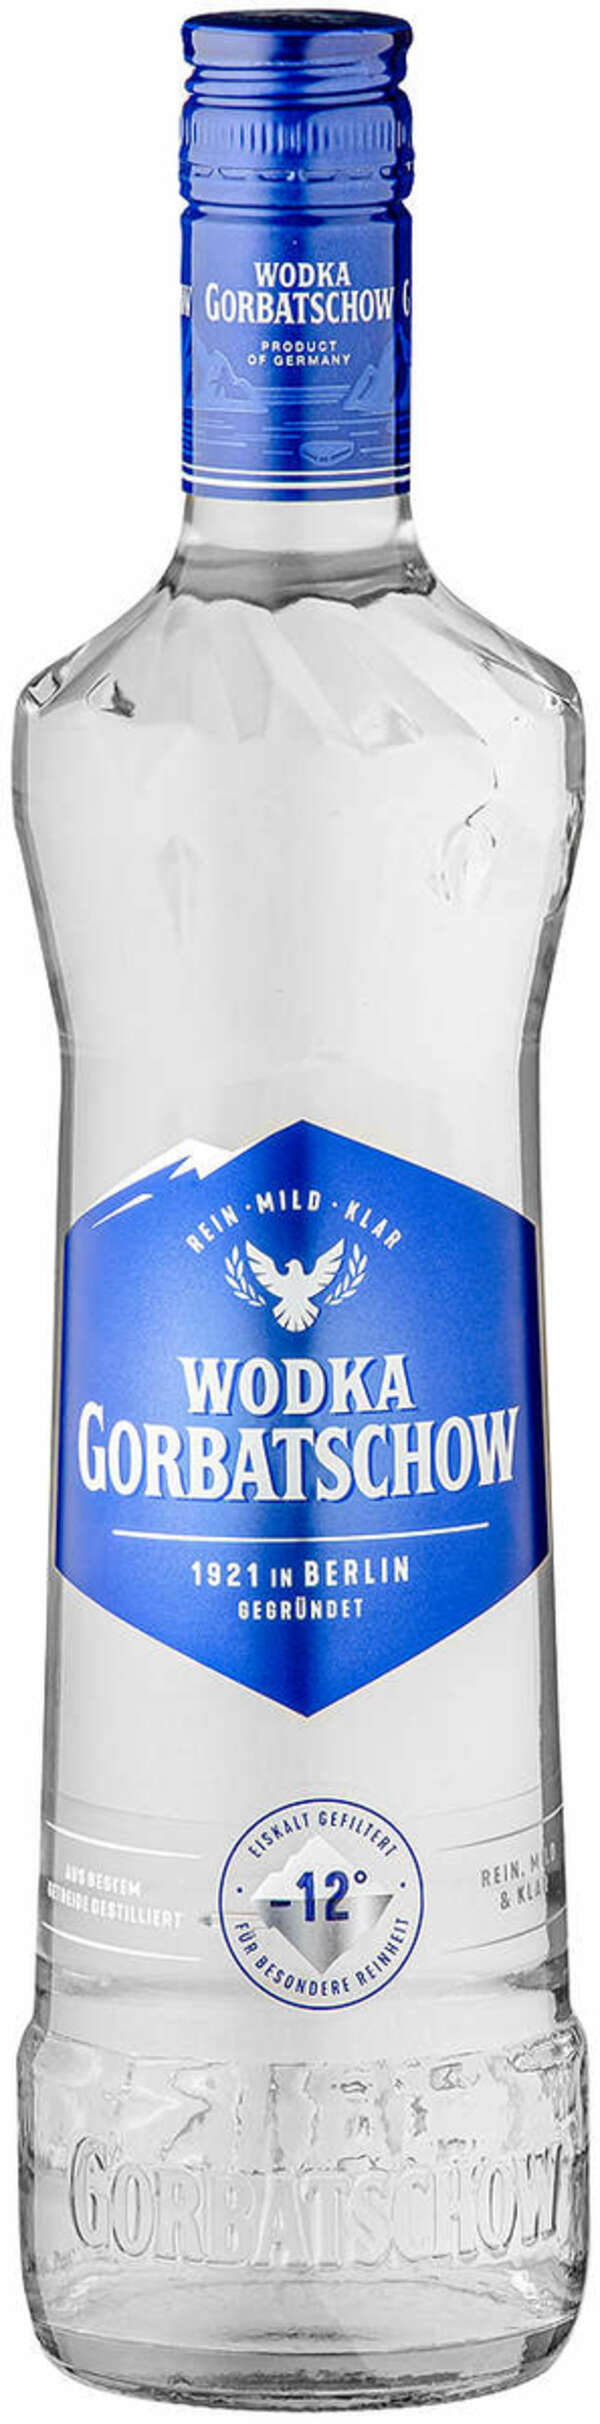 Bild 1 von GORBATSCHOW Wodka